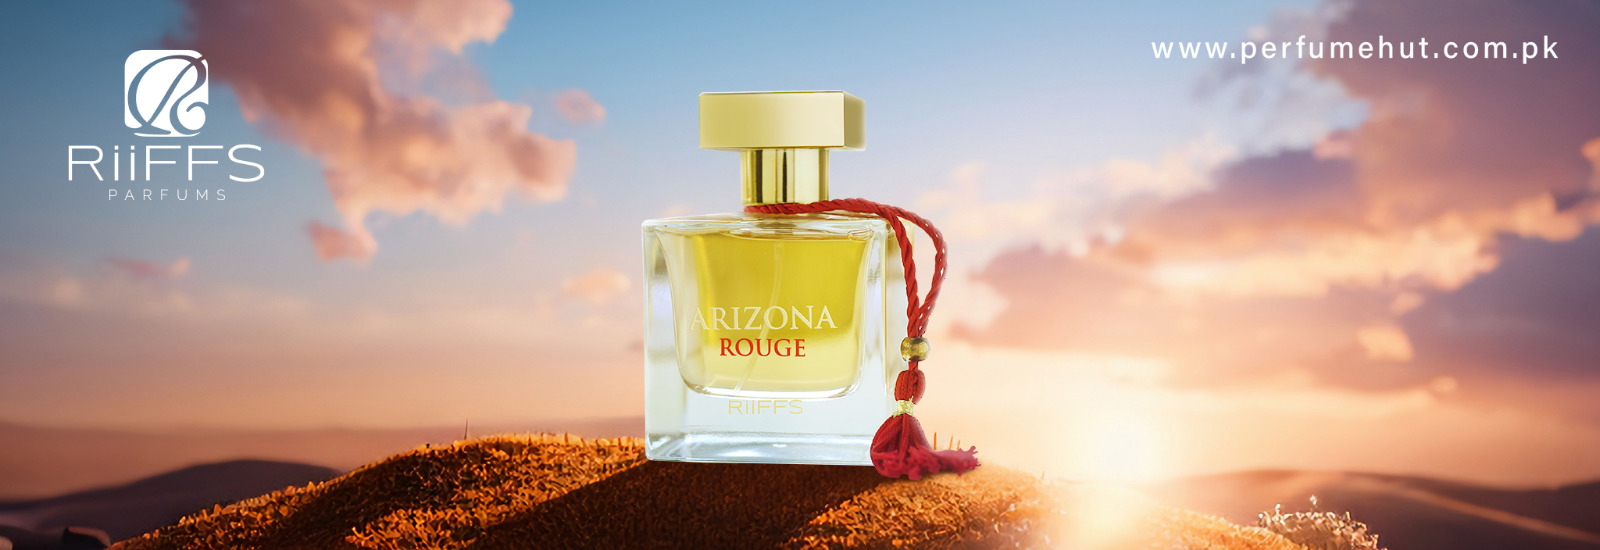 arizona rouge for perfume hut